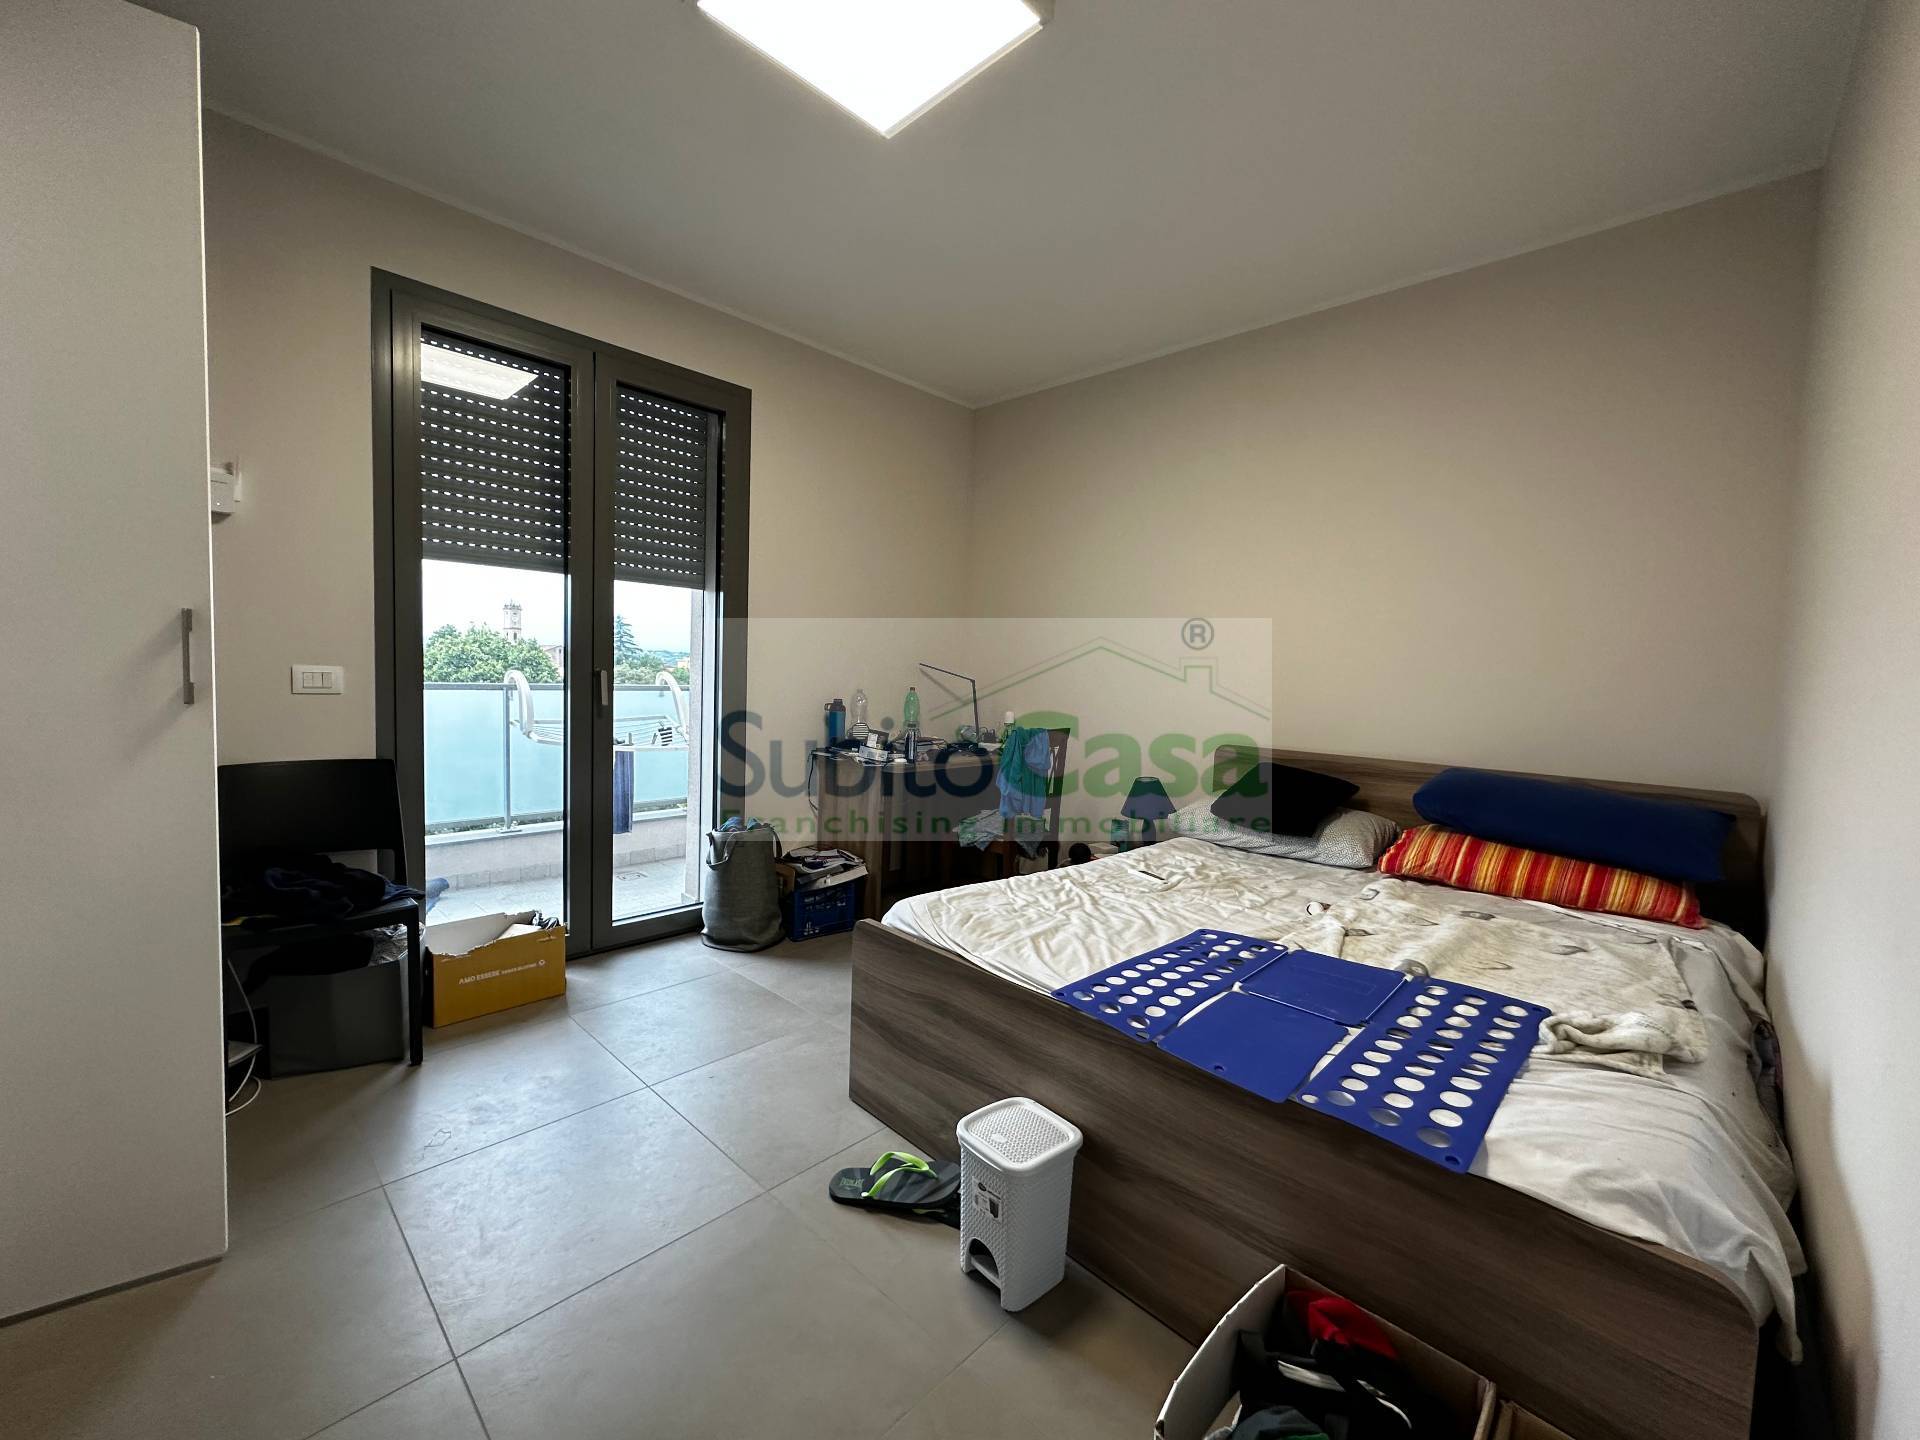 Appartamento arredato in affitto, Chieti scalo zona villaggio mediterraneo